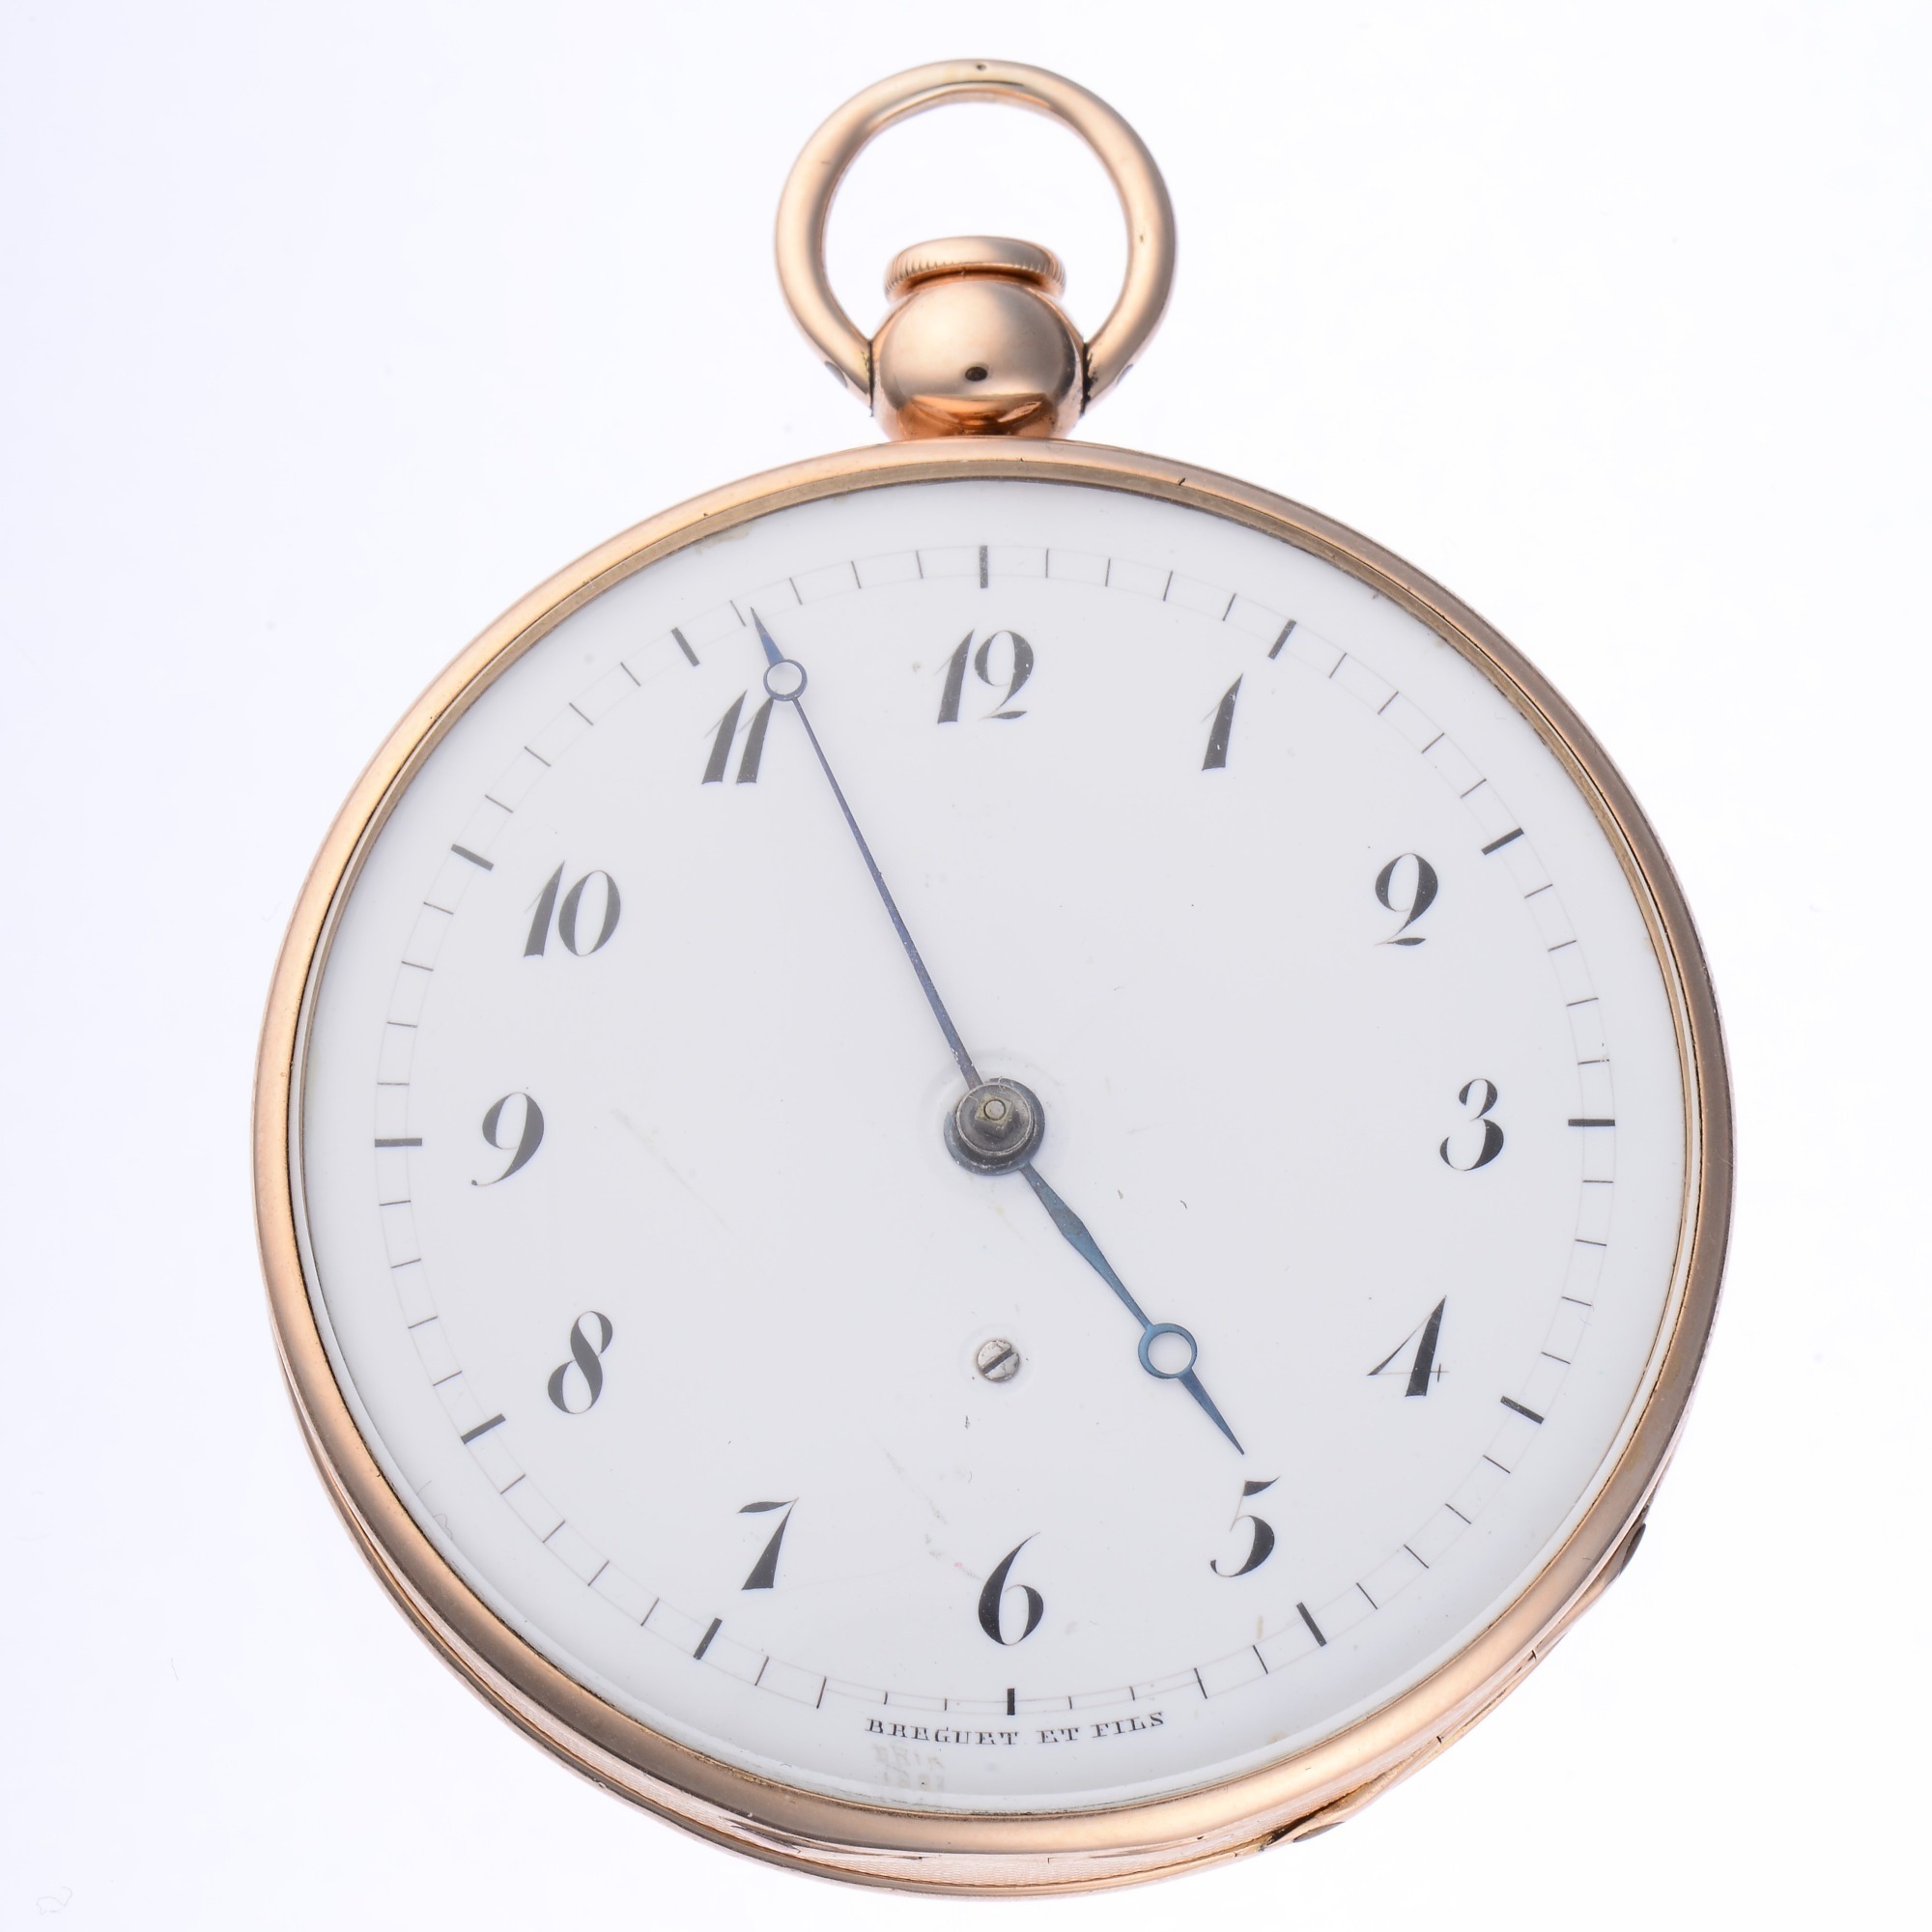 Breguet et Fils 18K Gold Quarter Hour Repeater Open Face Key Wind Pocket Watch